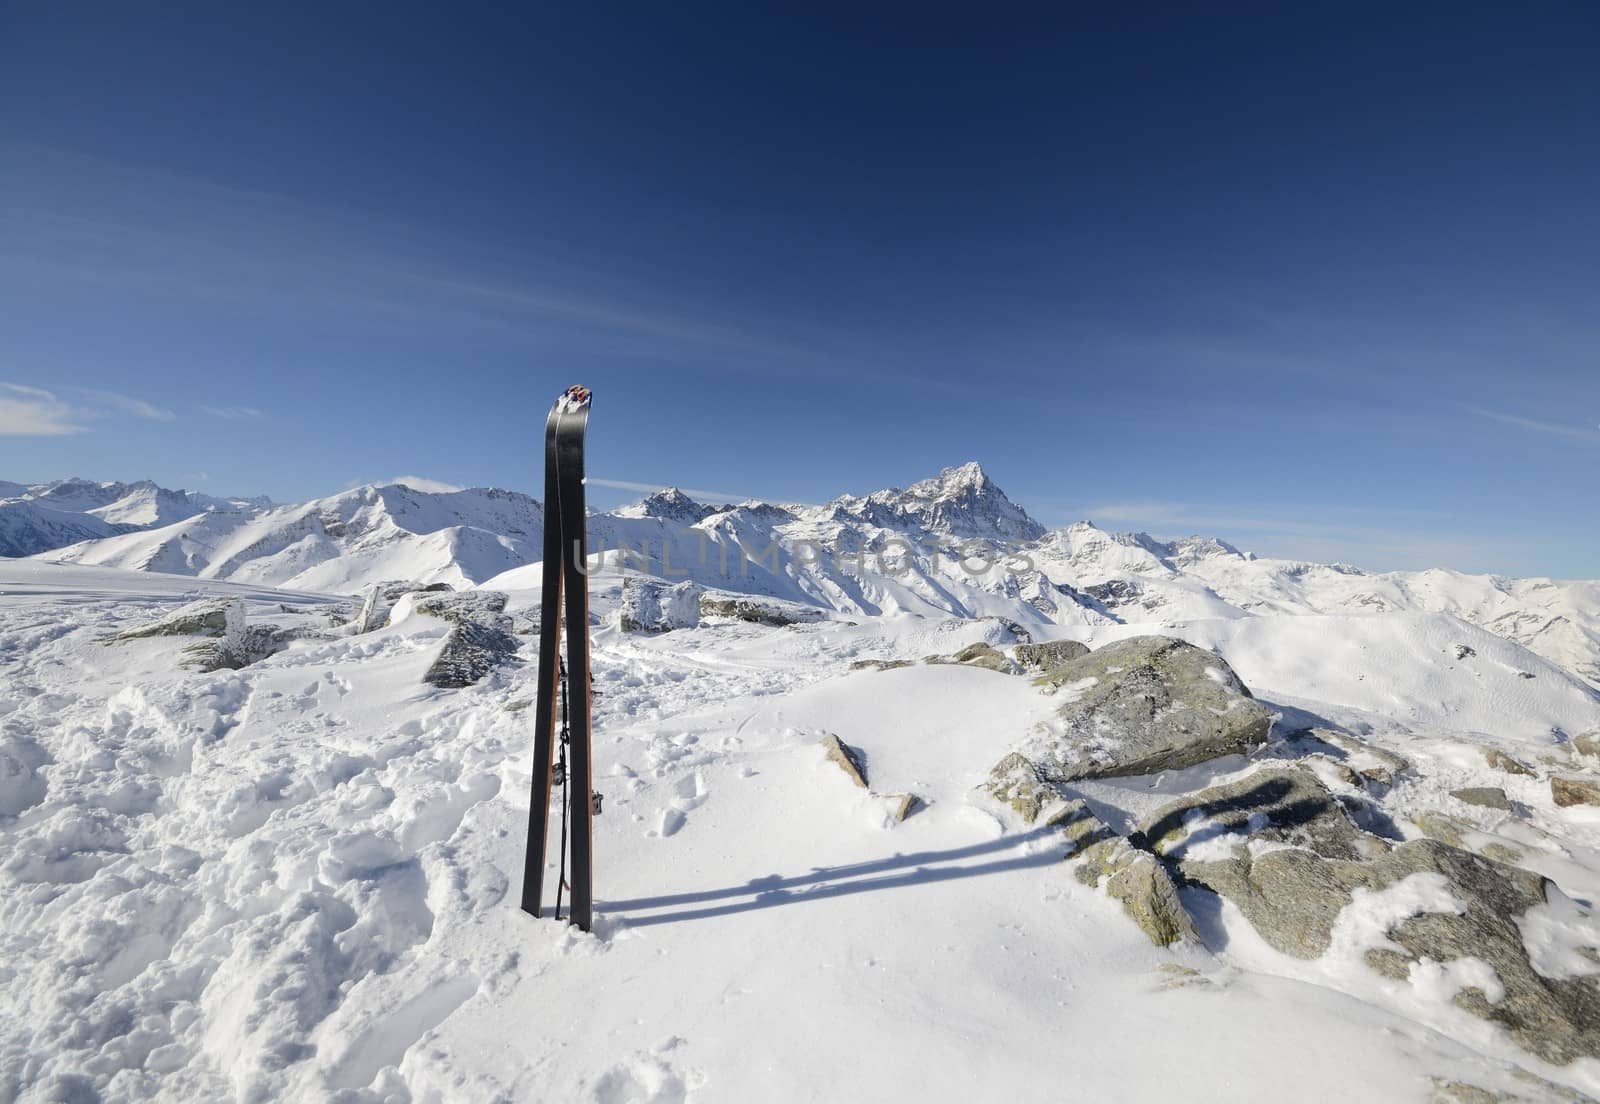 Tour ski on the summit by fbxx